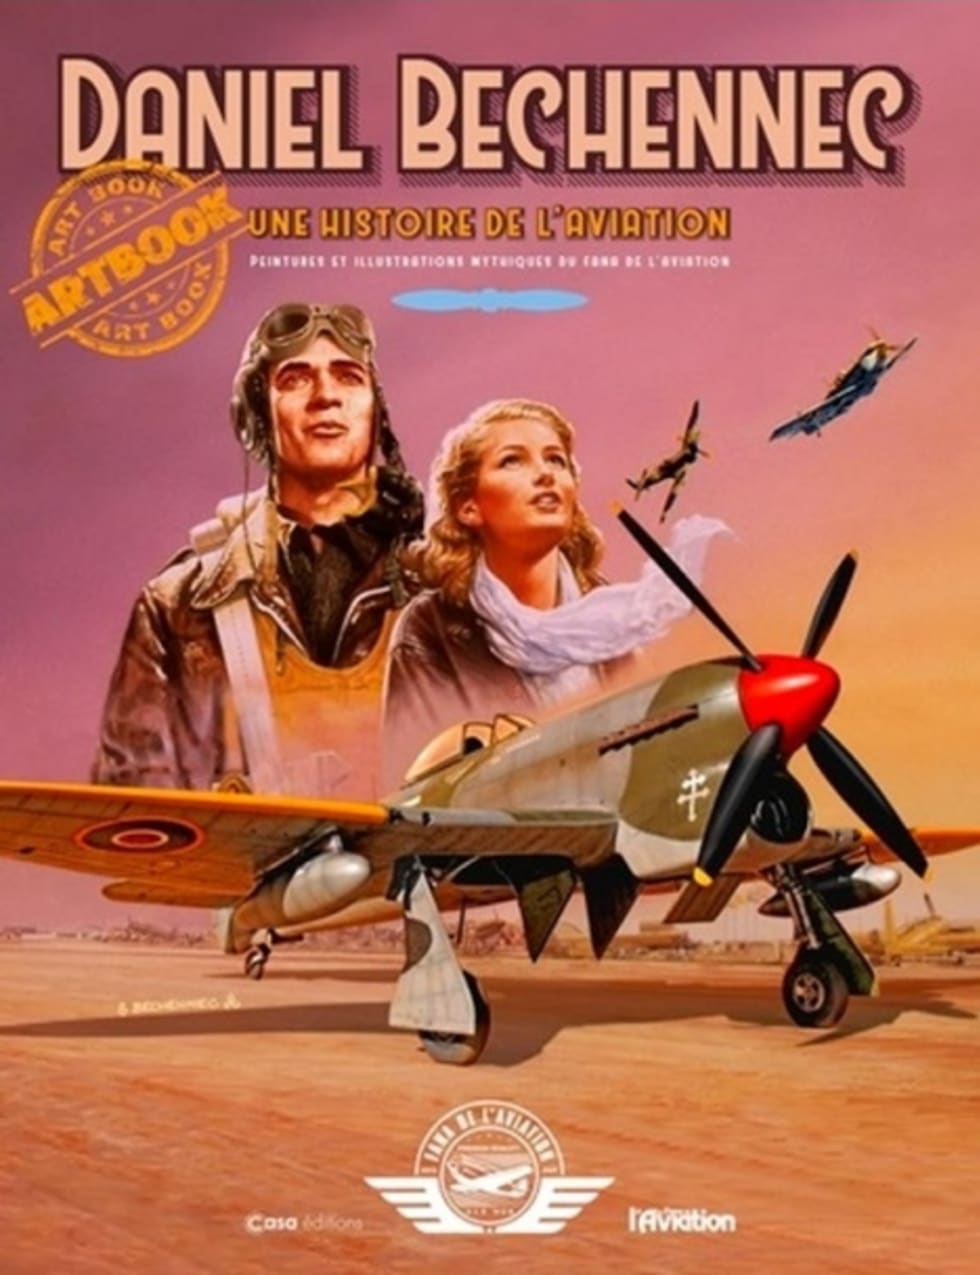 Couverture du livre "une histoire de l'aviation"